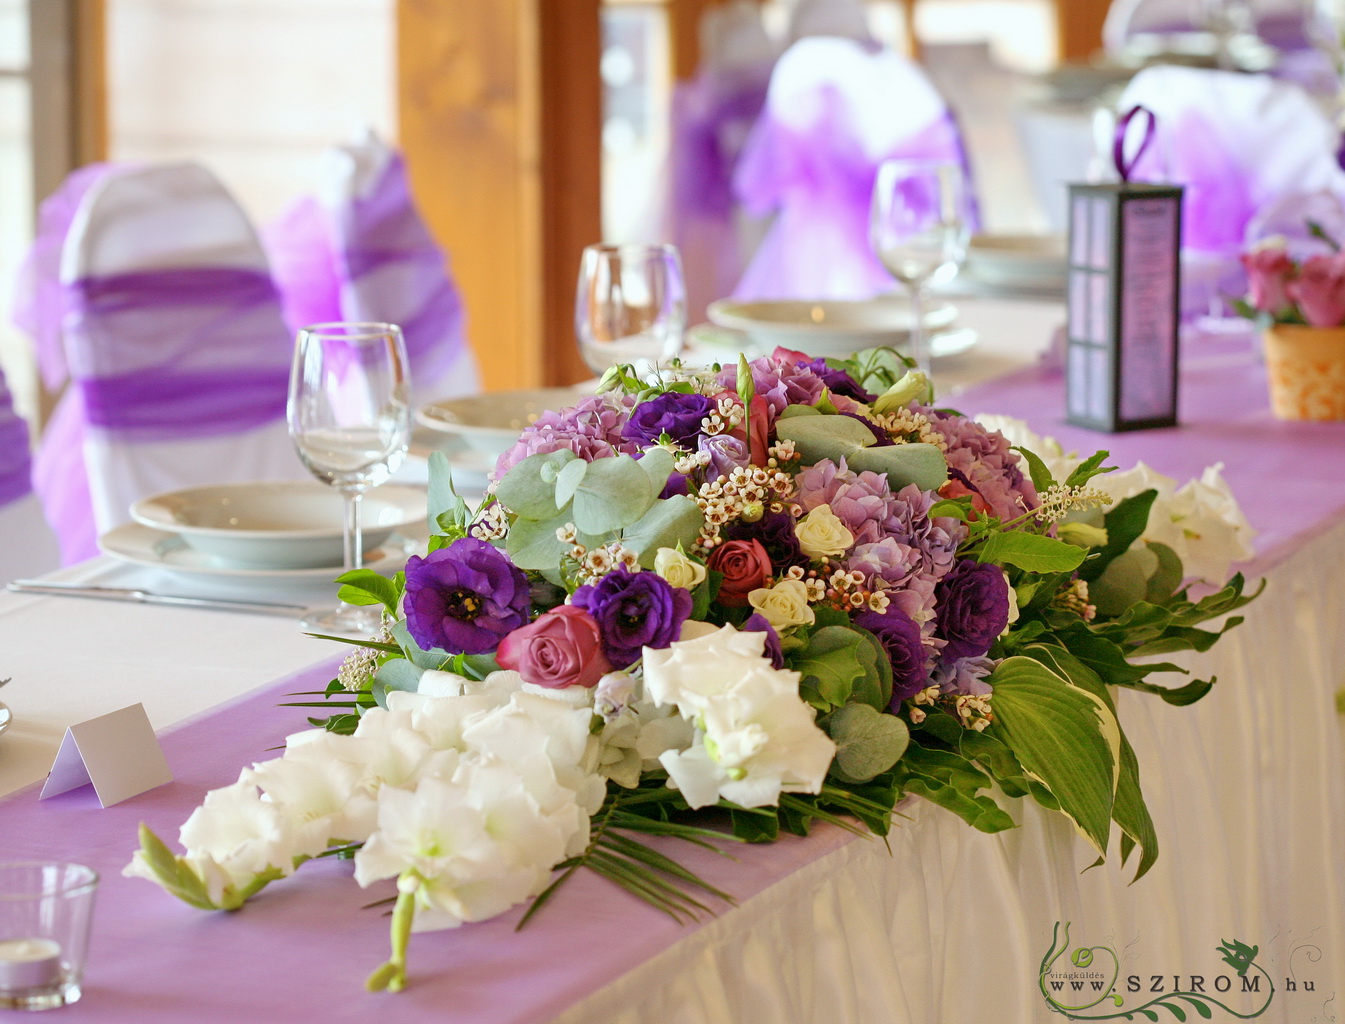 főasztaldísz (rózsa, kardvirág, liziantusz, hortenzia, wax, lila), Petneházy Club, esküvő